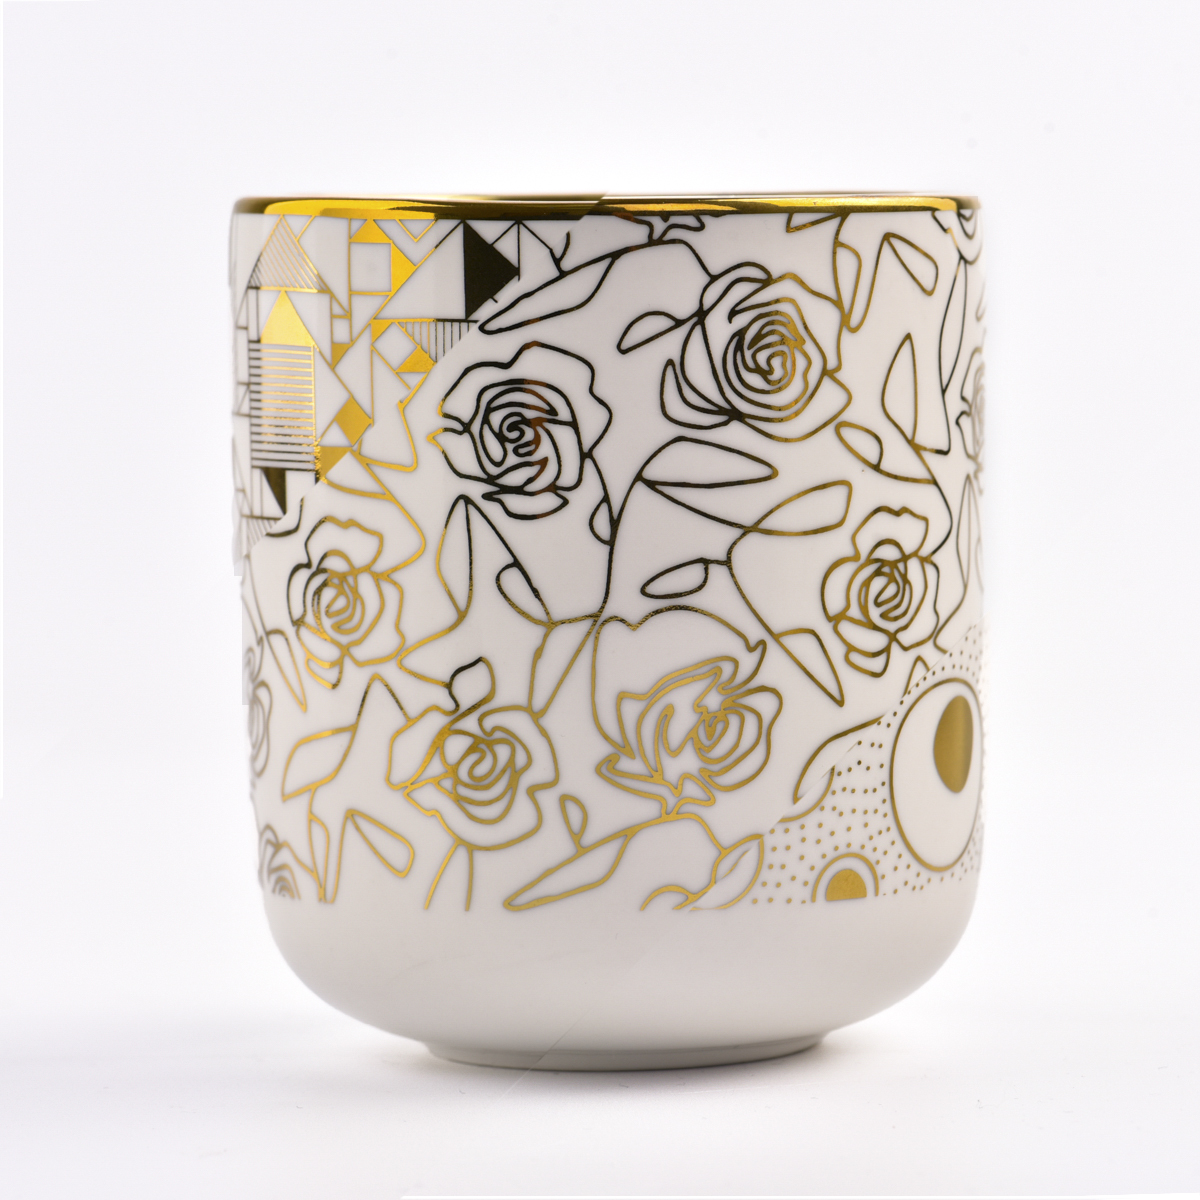 gylne keramiske stearinlysglass med rose på utsiden